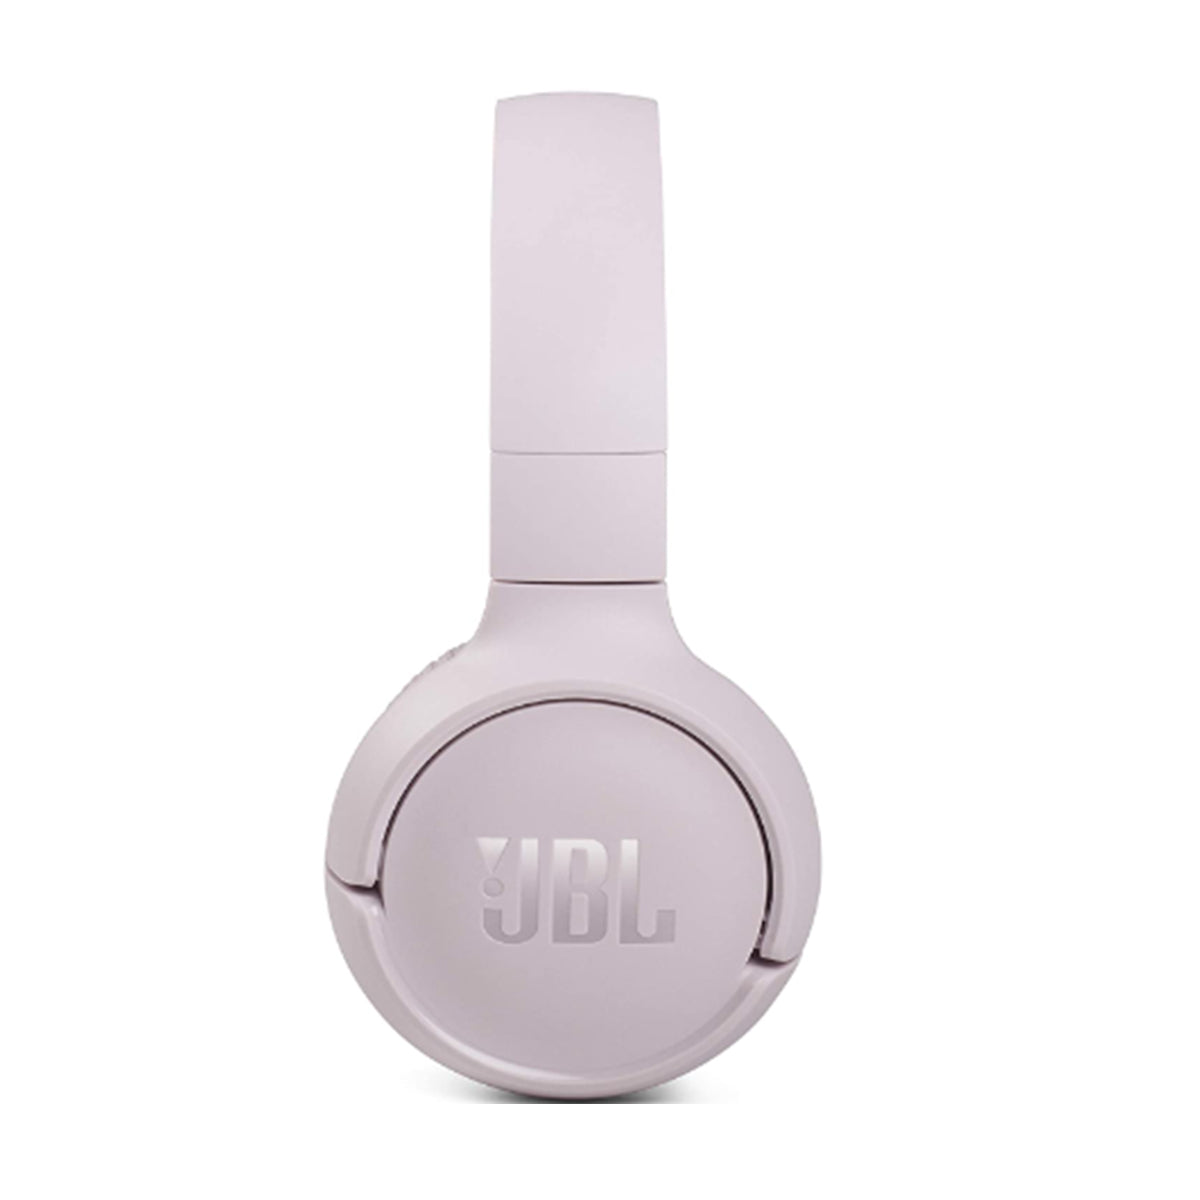 JBL Tune 510BT Auriculares Inalámbricos - JBL Tune 510BT Wireless Headphones